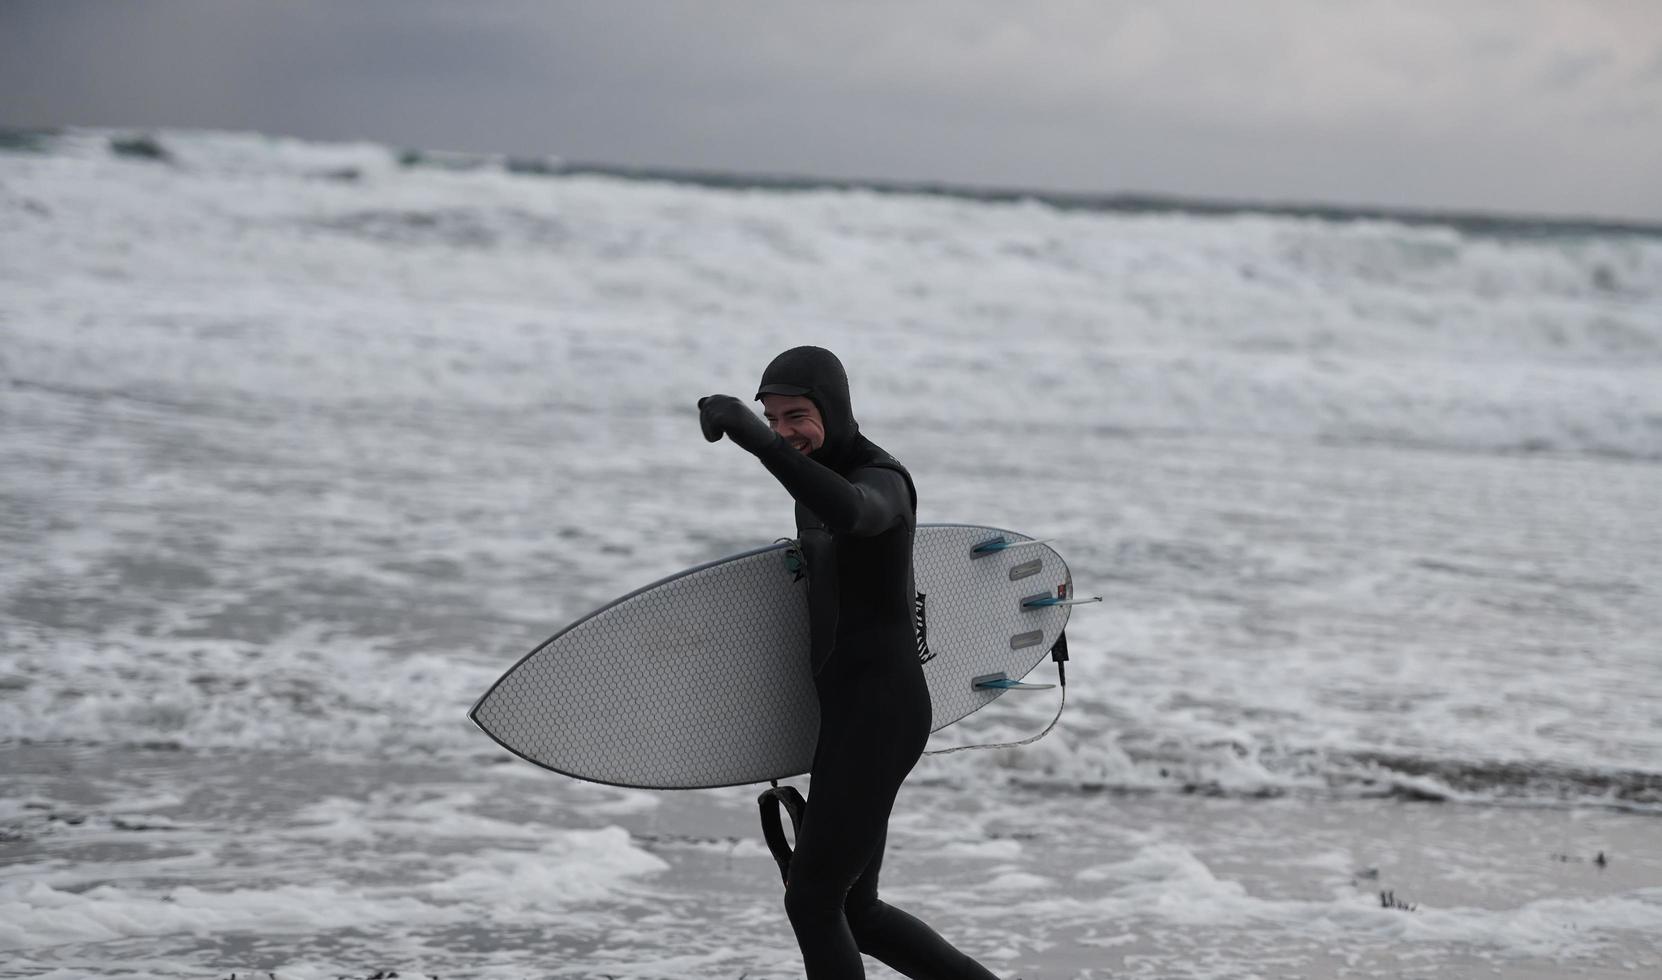 arctisch surfer gaan door strand na surfing foto